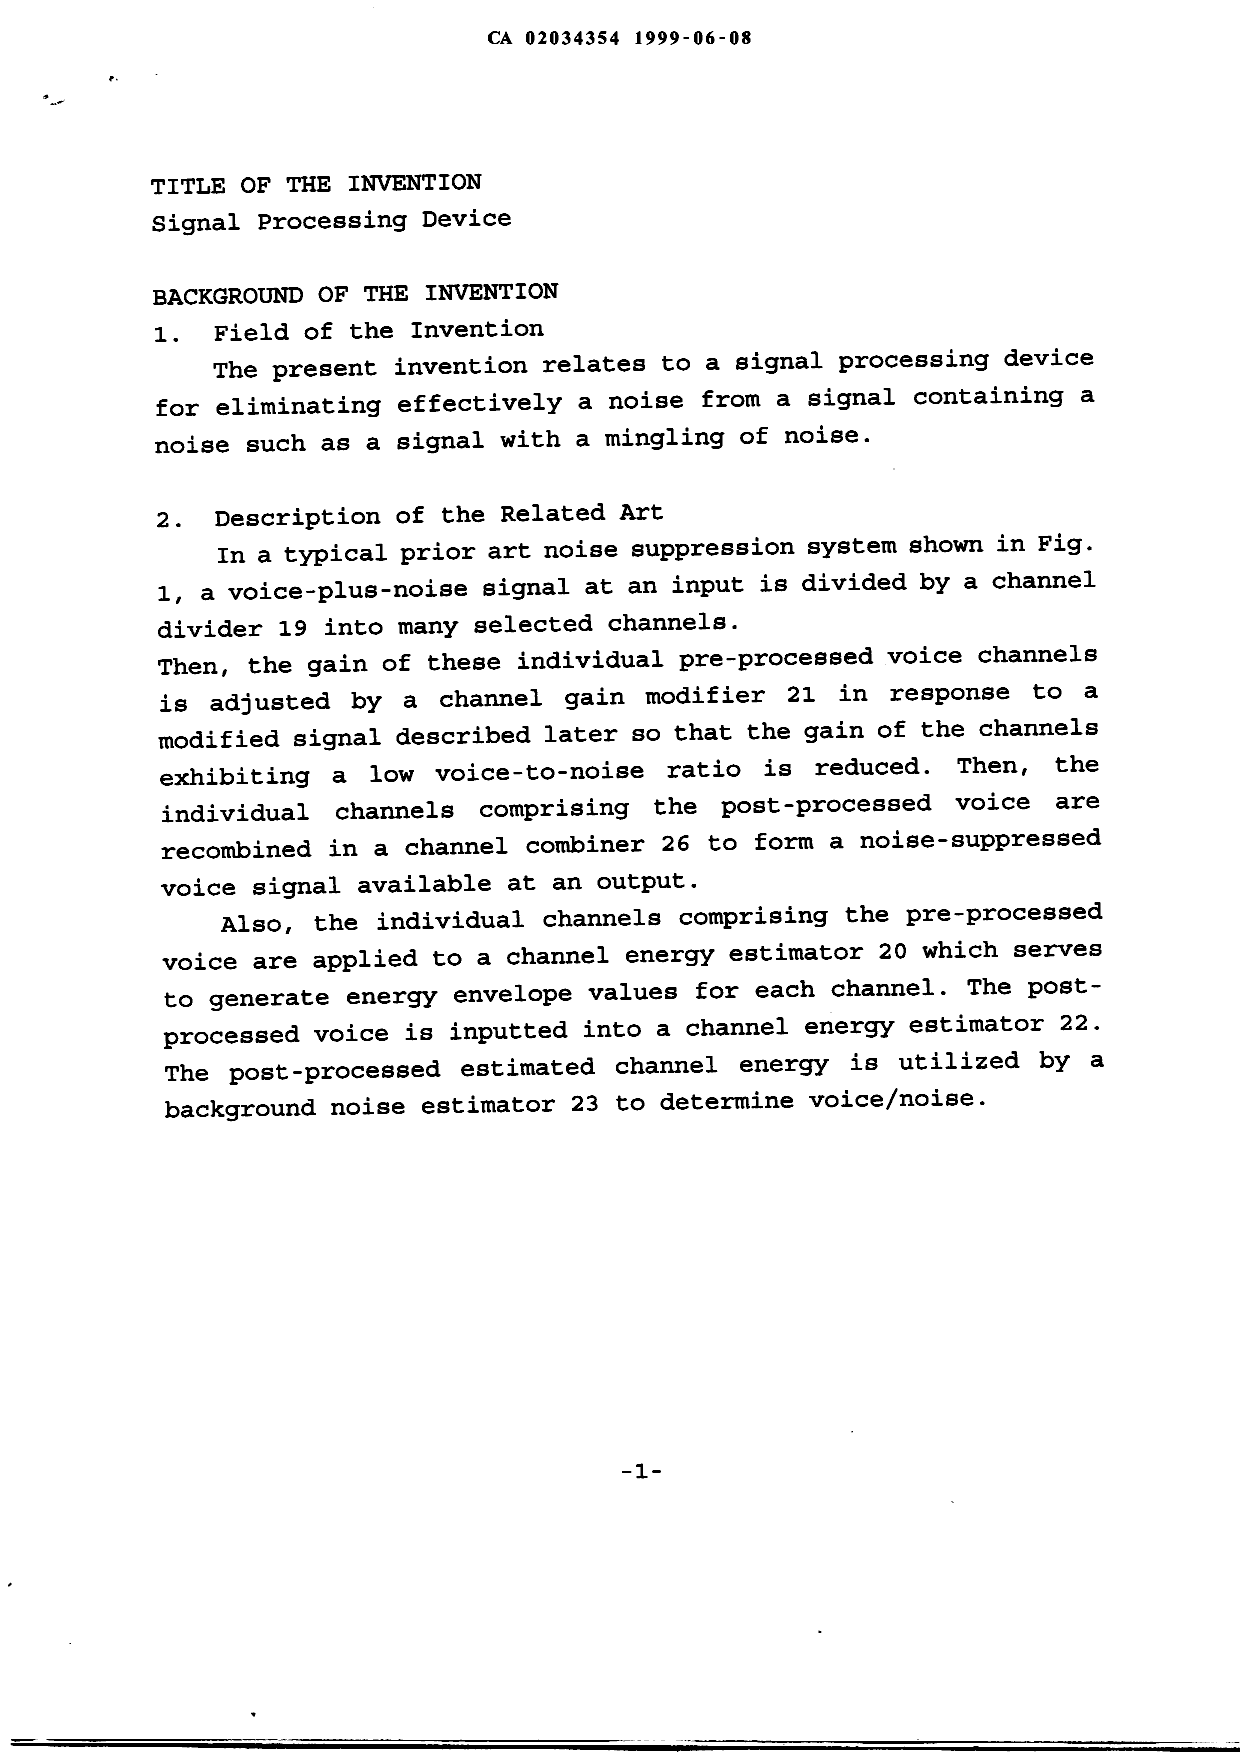 Canadian Patent Document 2034354. Description 19990608. Image 1 of 27